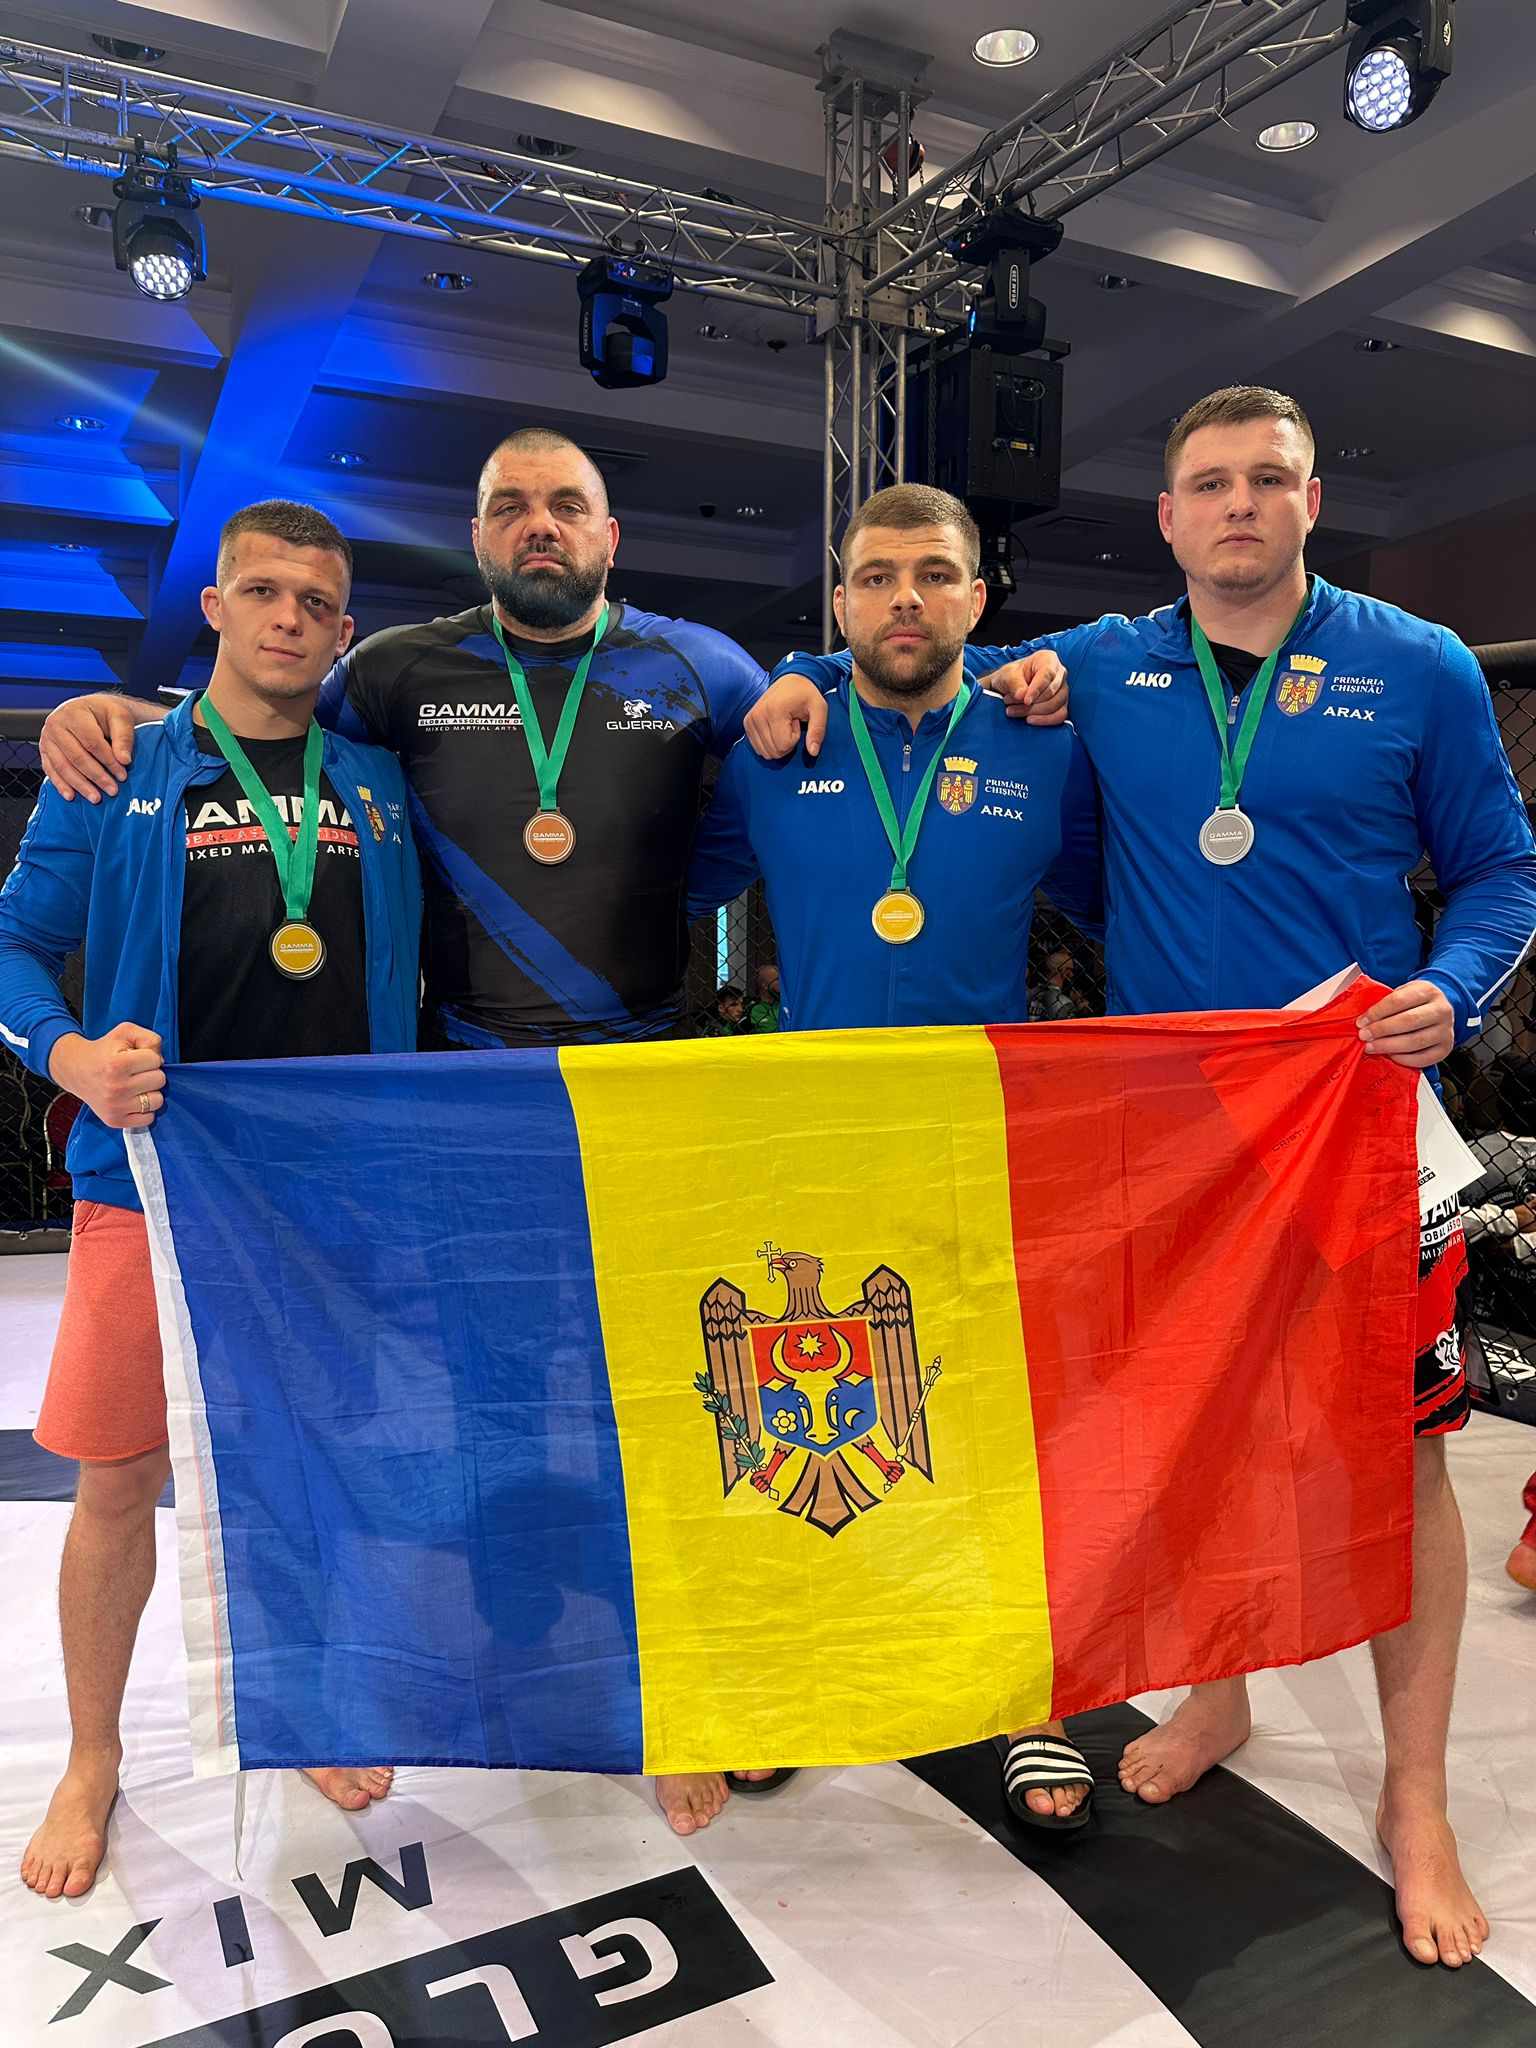 (VIDEO) Sportivii Federației de Lupte Universale au devenit campioni europeni la Campionatul Europei la MMA (GAMMA)